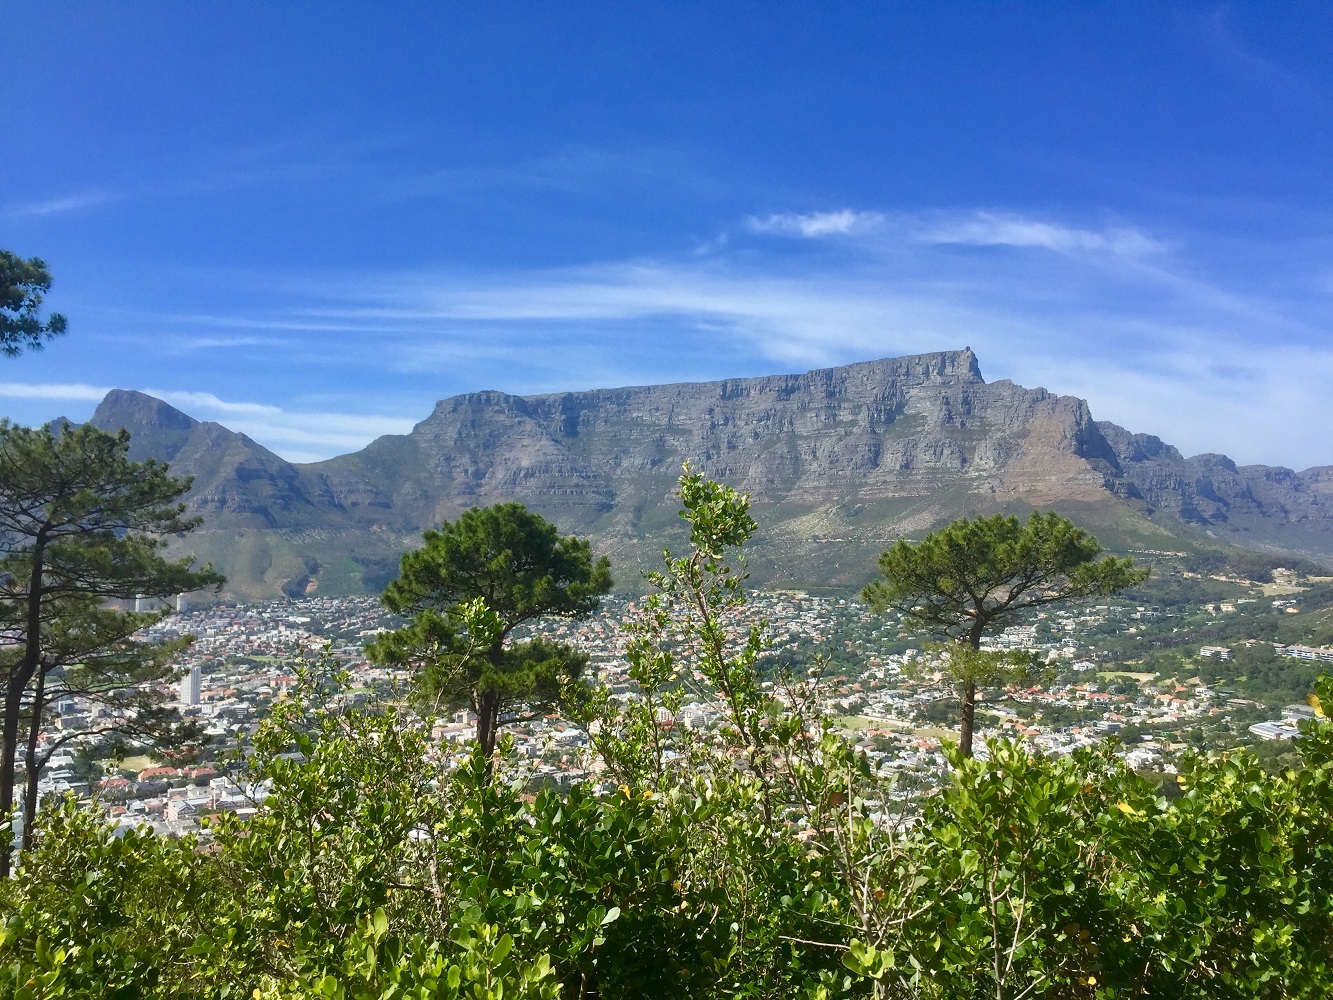 Mein Schiff Ausflug: Ausblick vom Singal Hill auf den Tafelberg